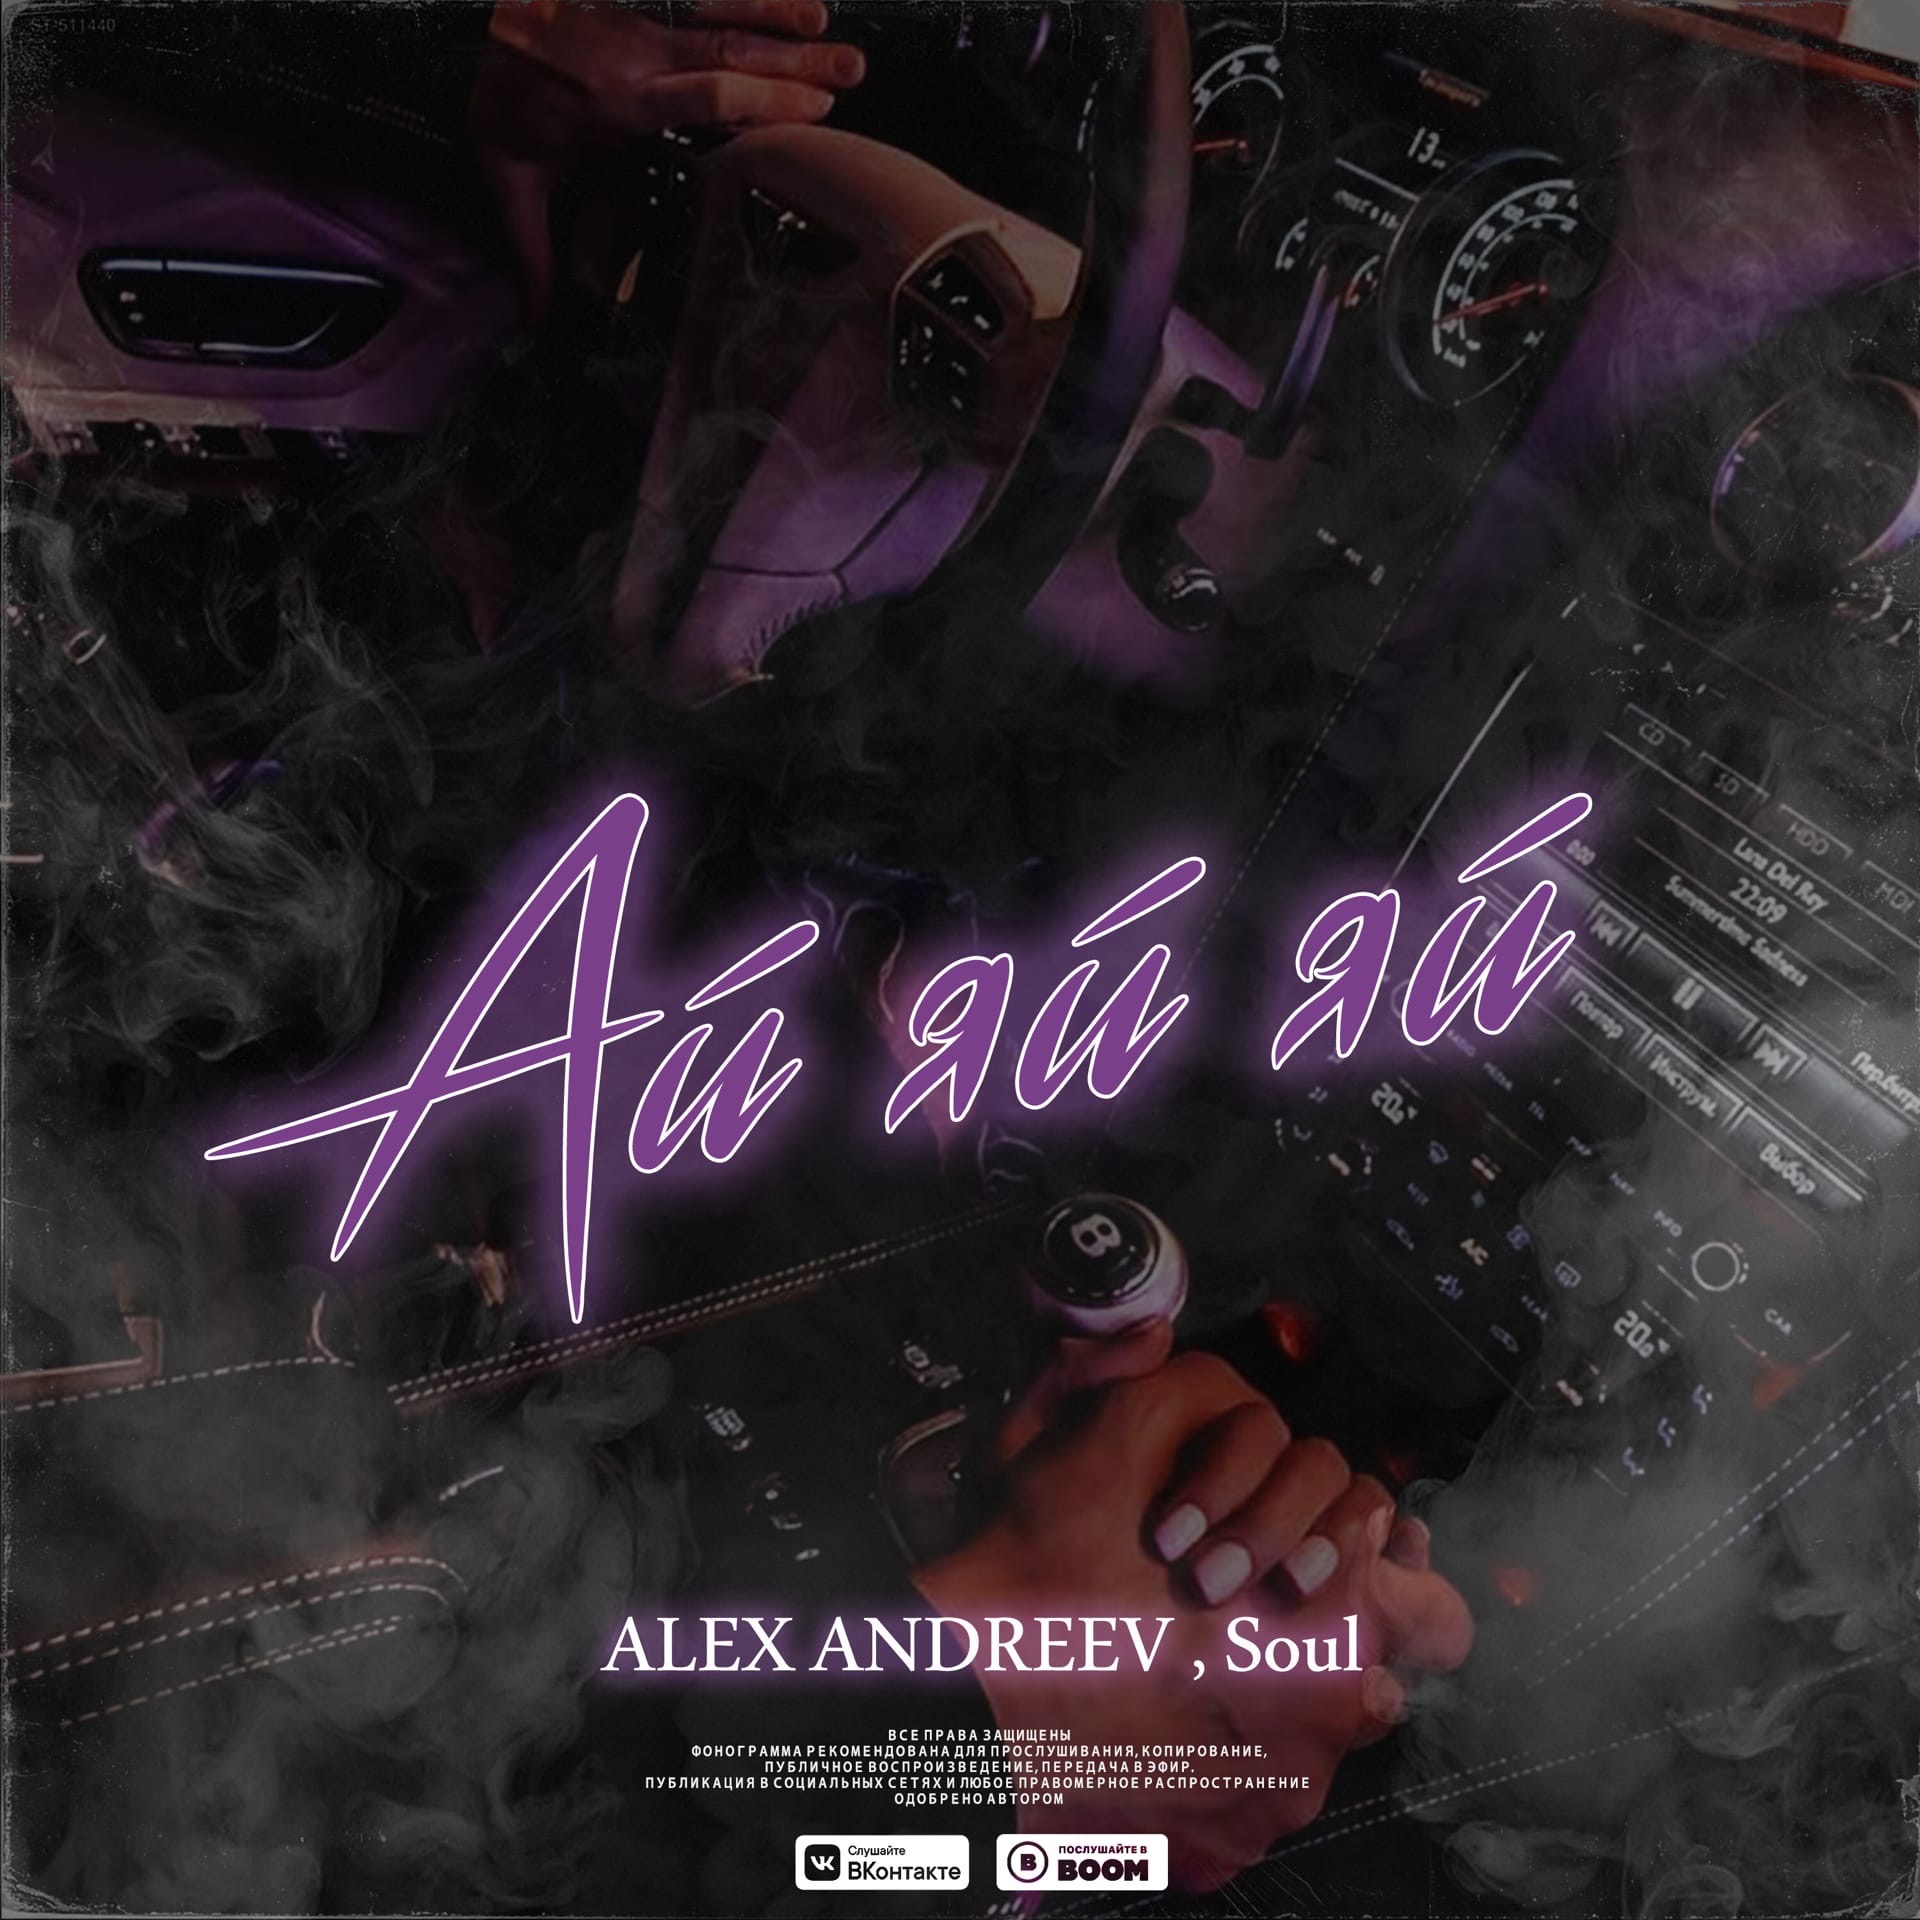 Словно дикий песня. Alex Andreev Soul ай яй. Премьера Alex Andreev, Soul ай-яй-яй. Алекс Андреев песни.